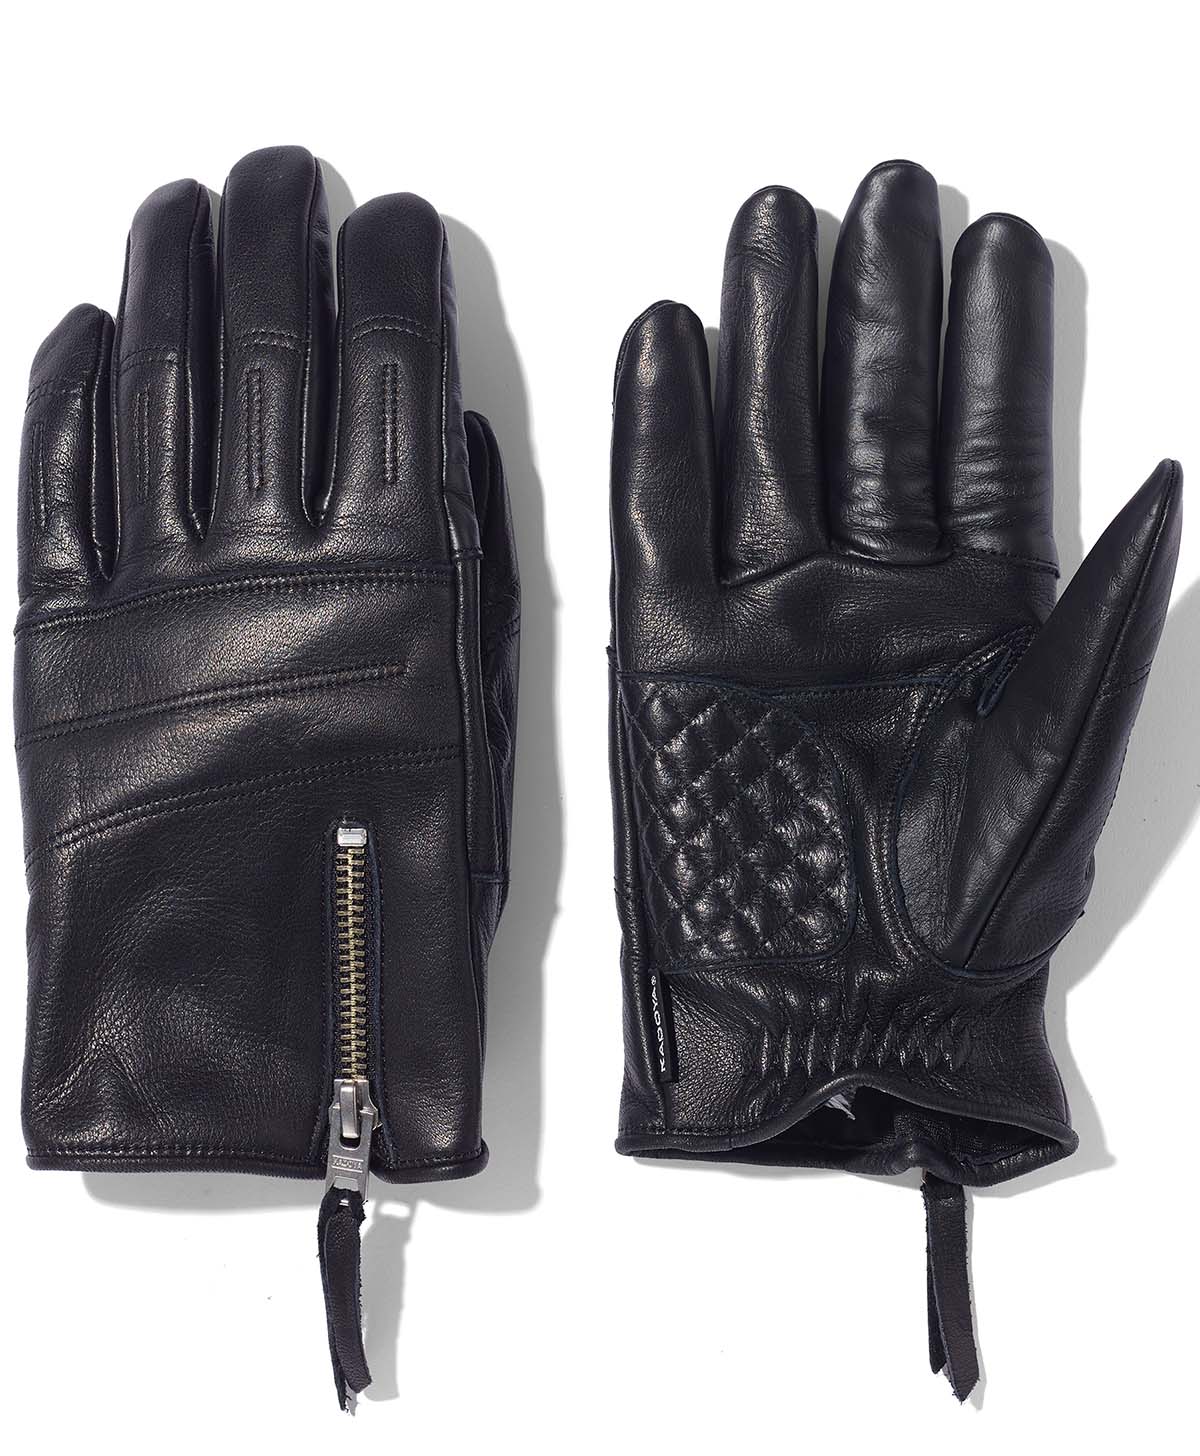 Rox Glove / Black (feminino)